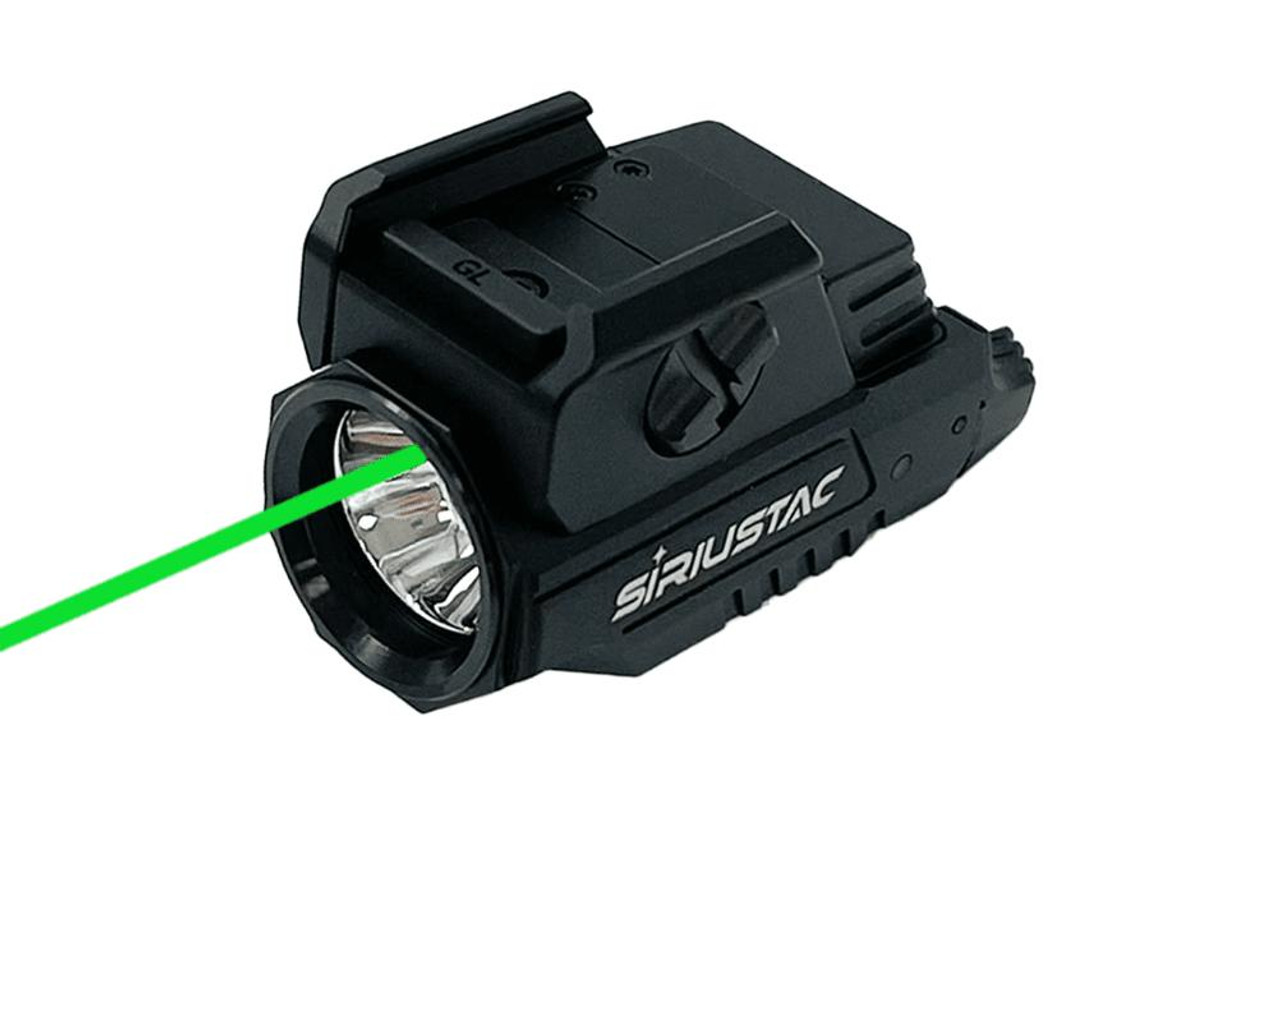 MCS Rechargeable Pistol Green Laser Light w/ Strobe HMGL 800lm 